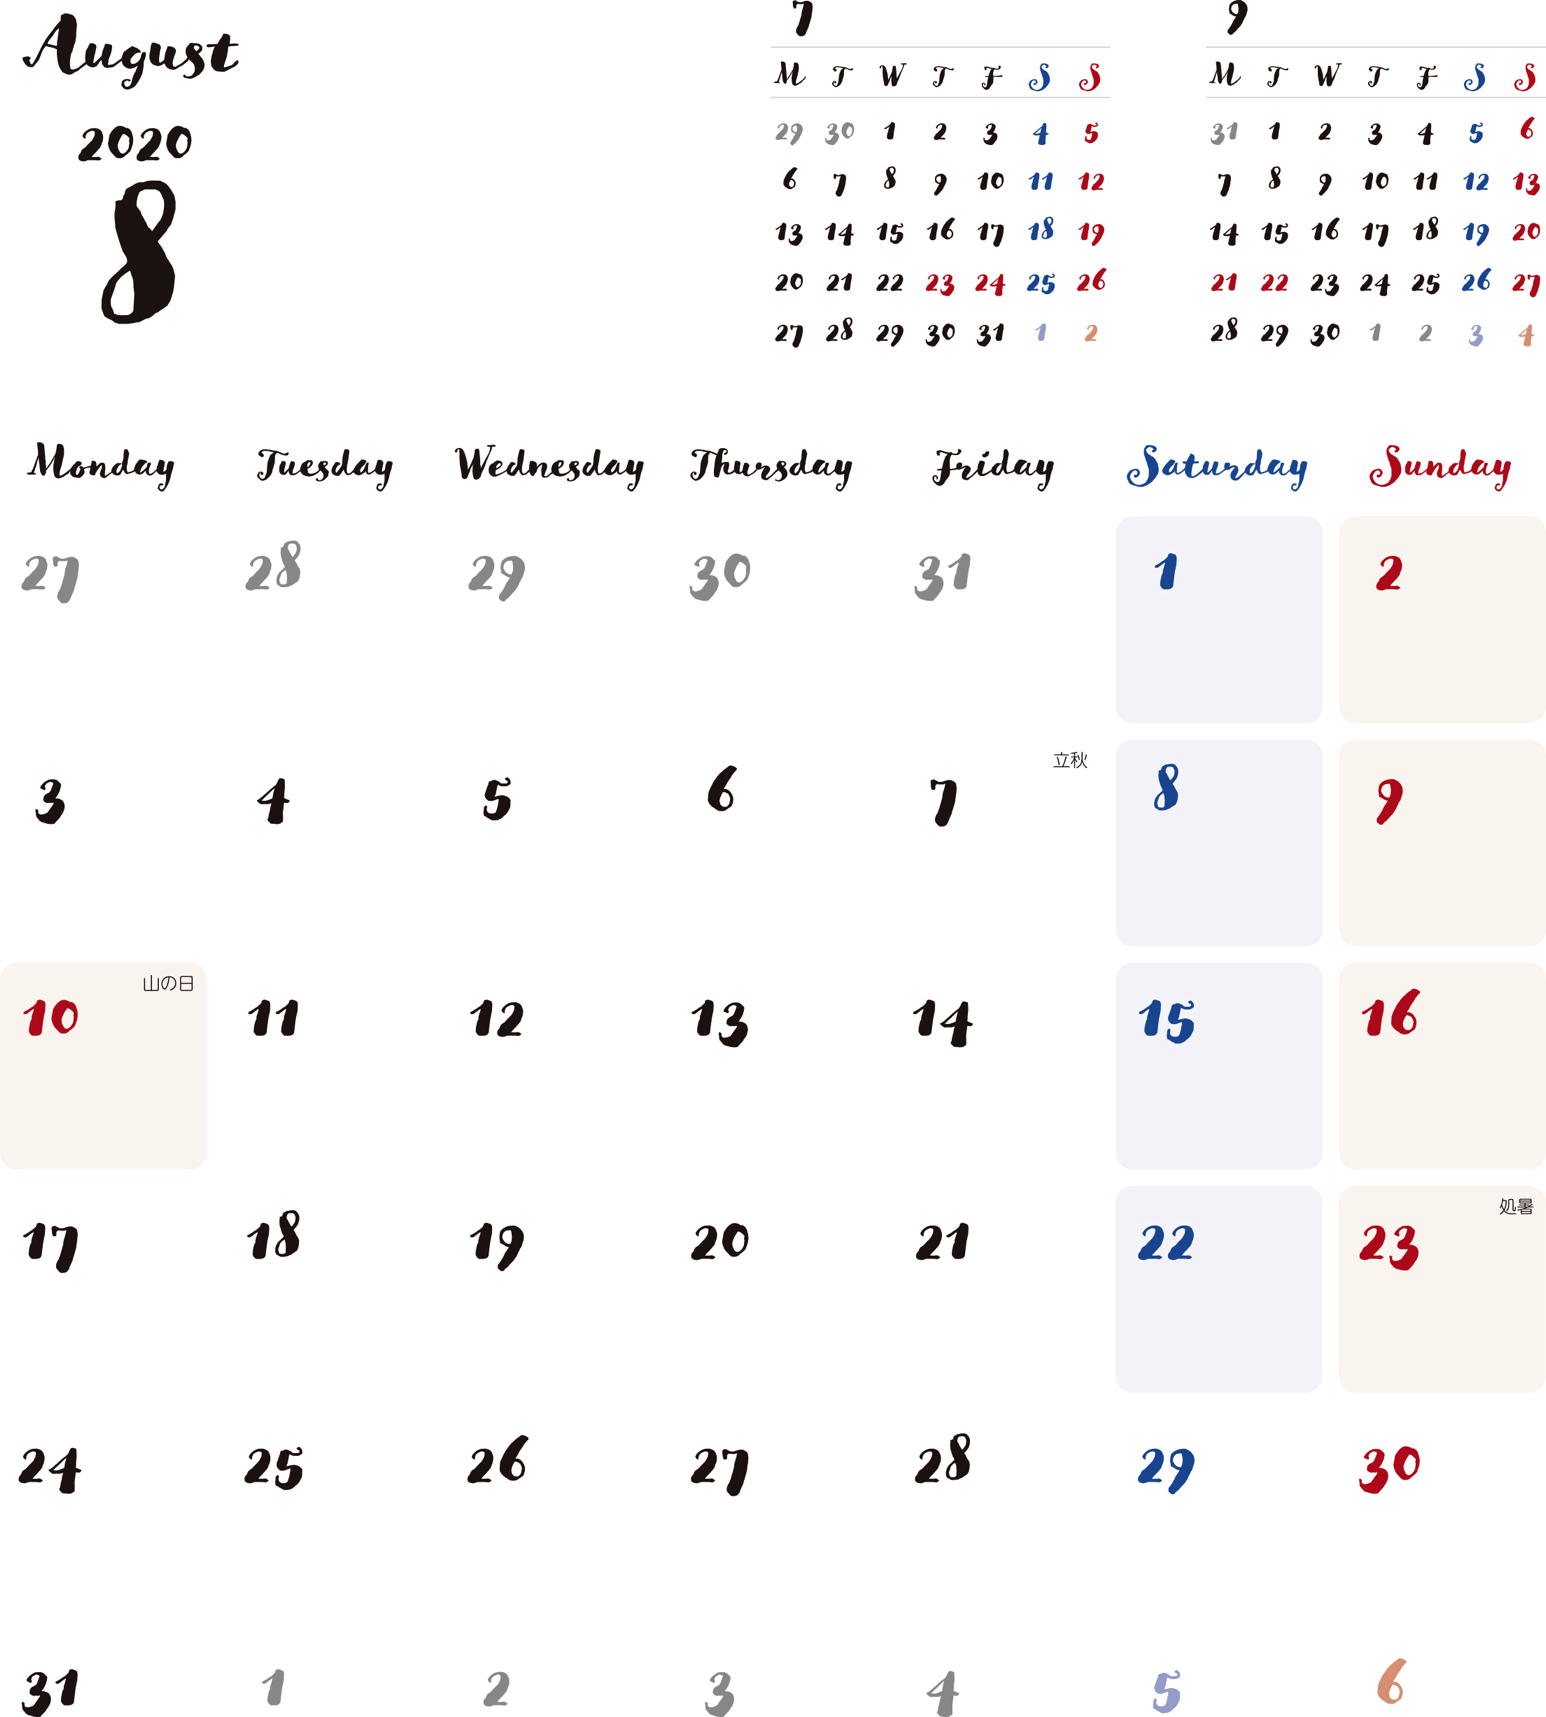 カレンダー 2020 無料 8月 シンプルなカレンダー 手書き風 A4 1ヶ月毎 月曜始まり 公式 イラスト素材サイト イラストダウンロード